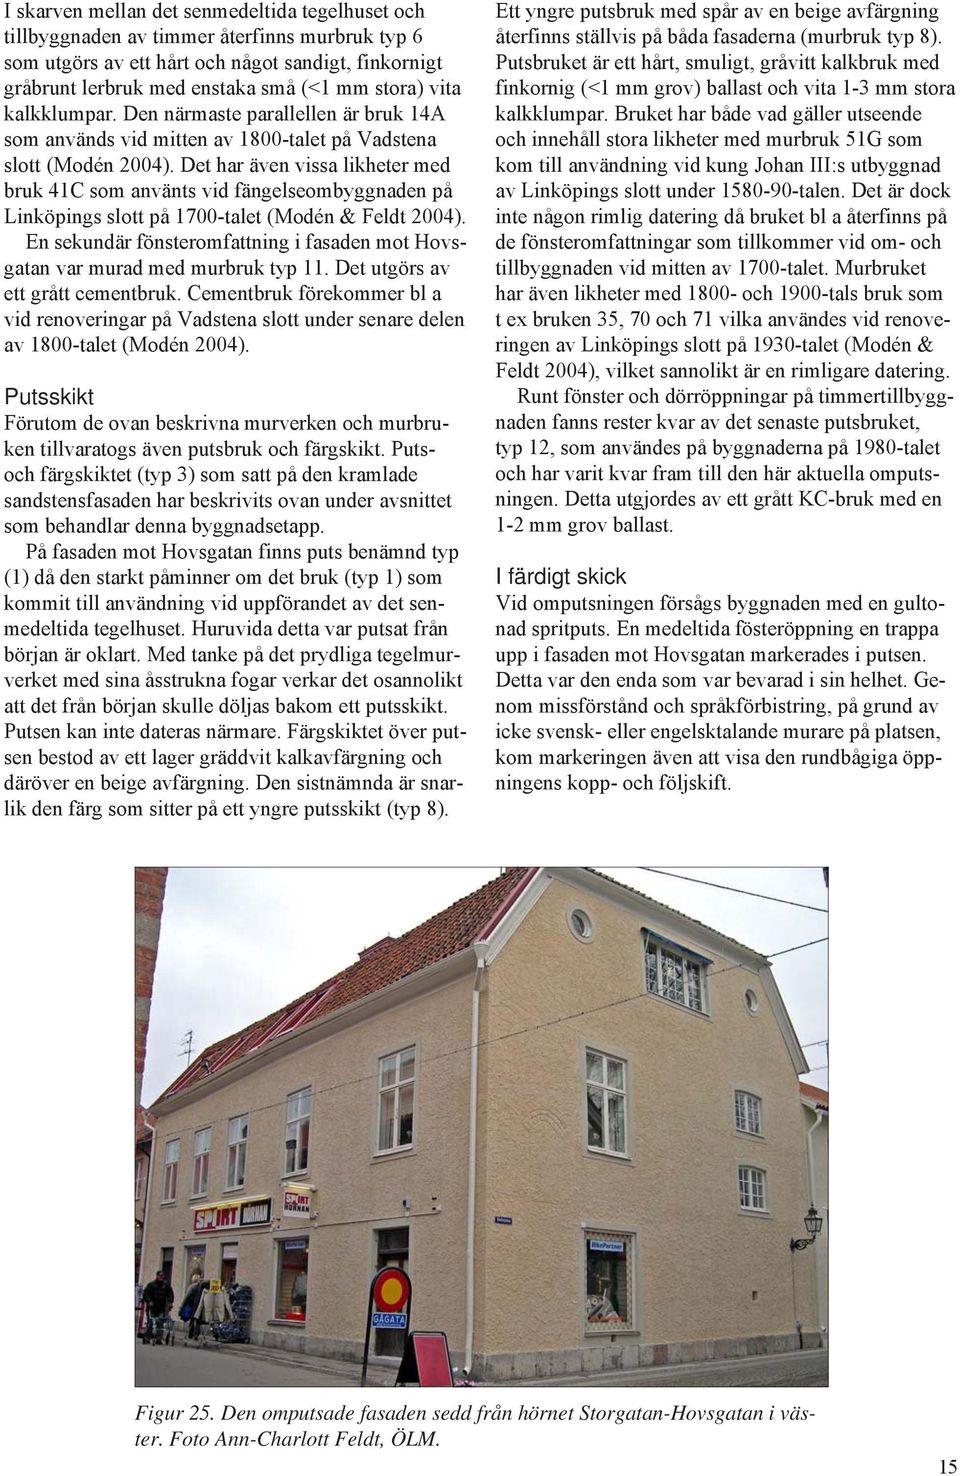 Det har även vissa likheter med bruk 41C som använts vid fängelseombyggnaden på Linköpings slott på 1700-talet (Modén & Feldt 2004).